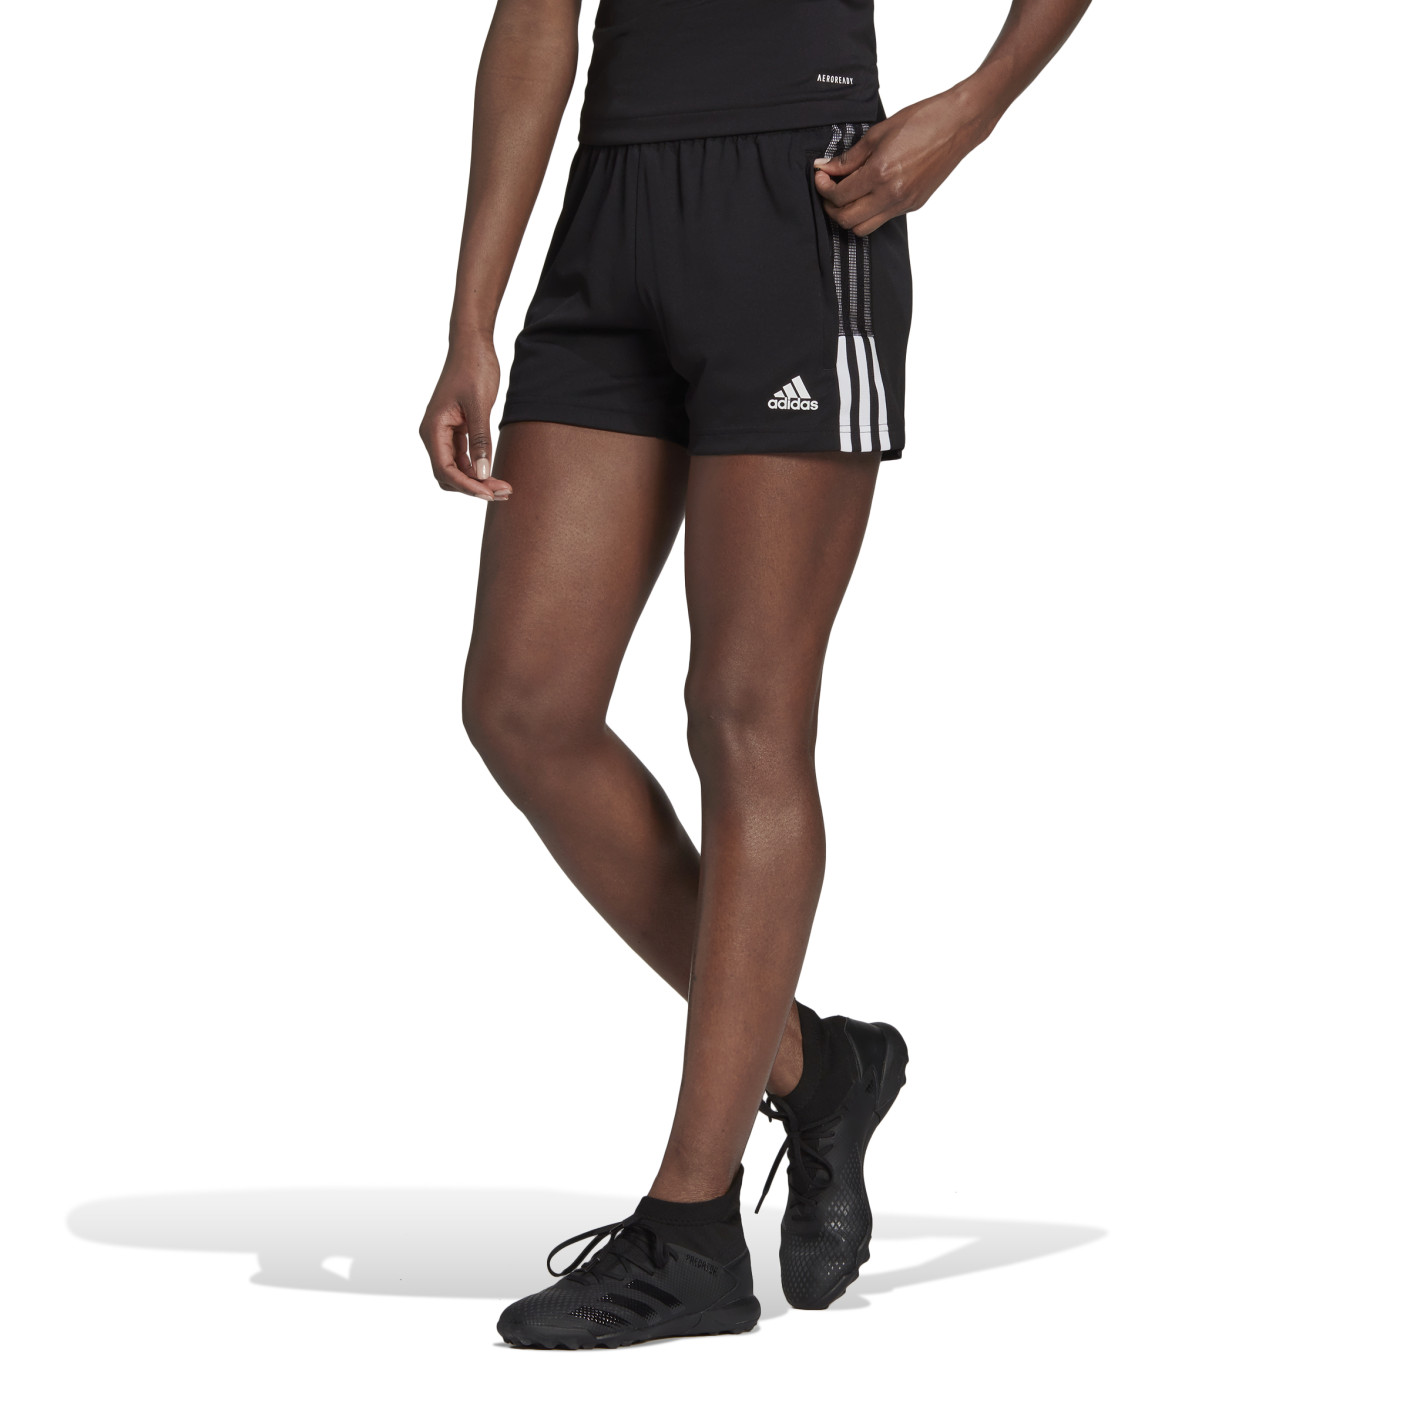 Pantalon de jogging adidas Tiro 21 pour femme, noir et blanc